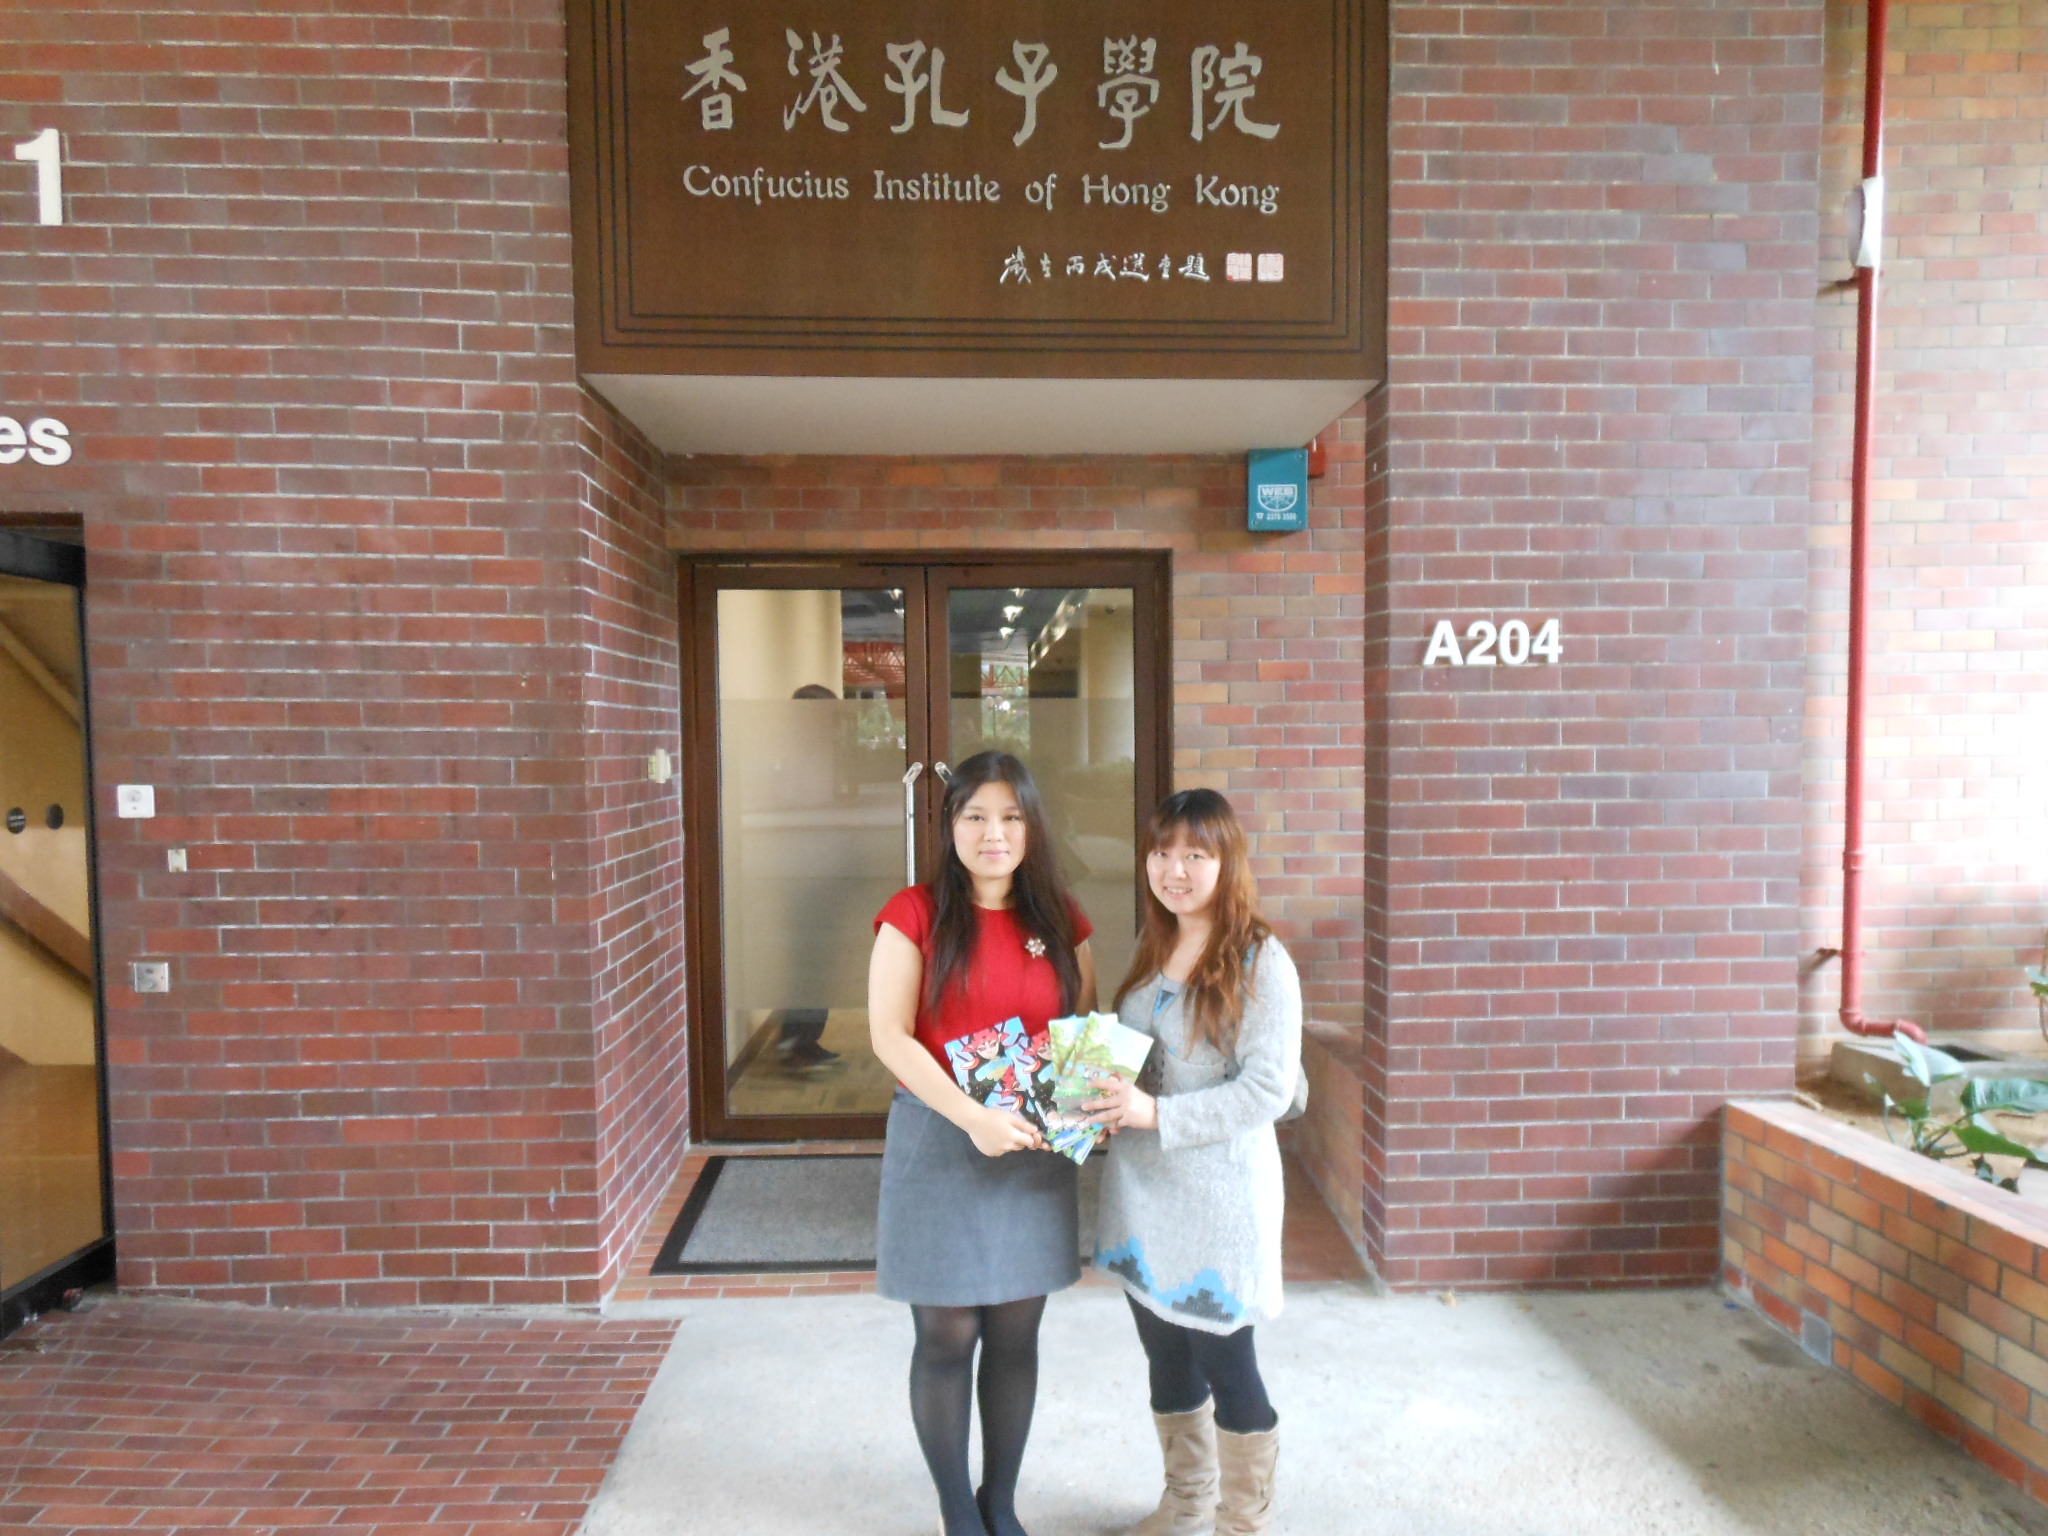 我基金會高級幹事黎鳳琪女士（右）向香港孔子學院課程導師張璐女士贈送畫冊.JPG